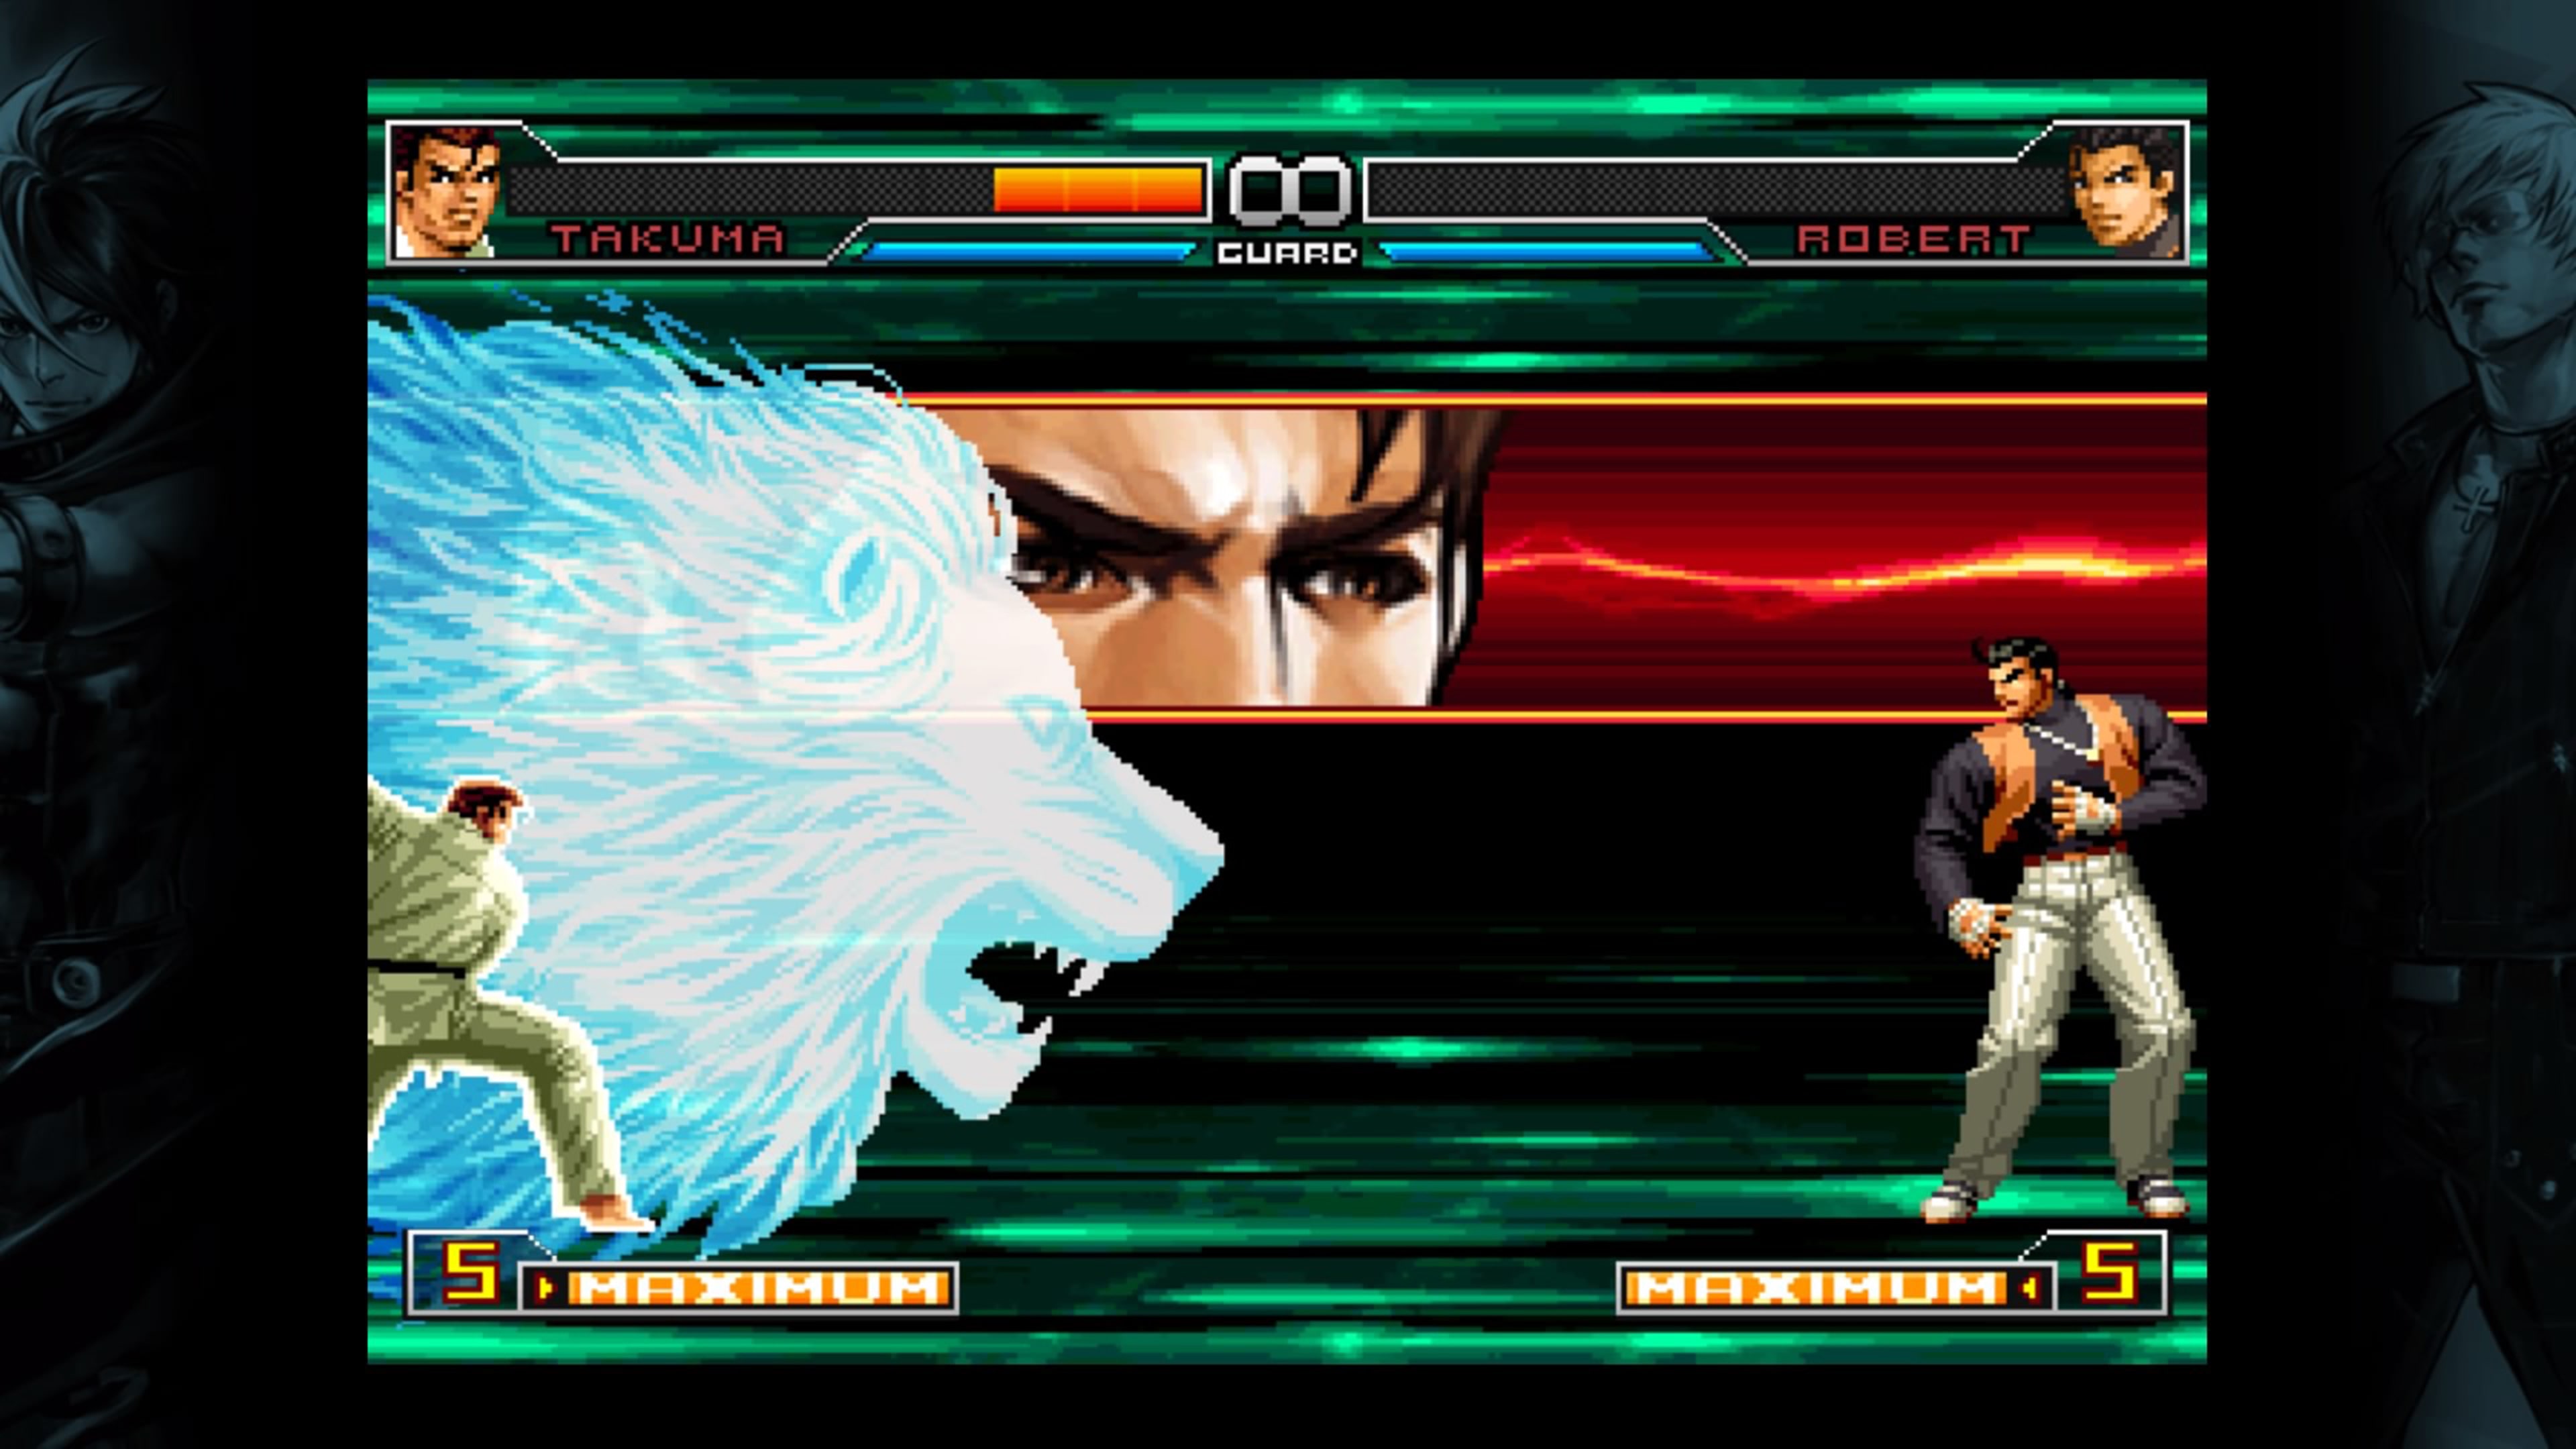 Jogo The King of Fighters 97 Global Match PS4 SNK com o Melhor Preço é no  Zoom